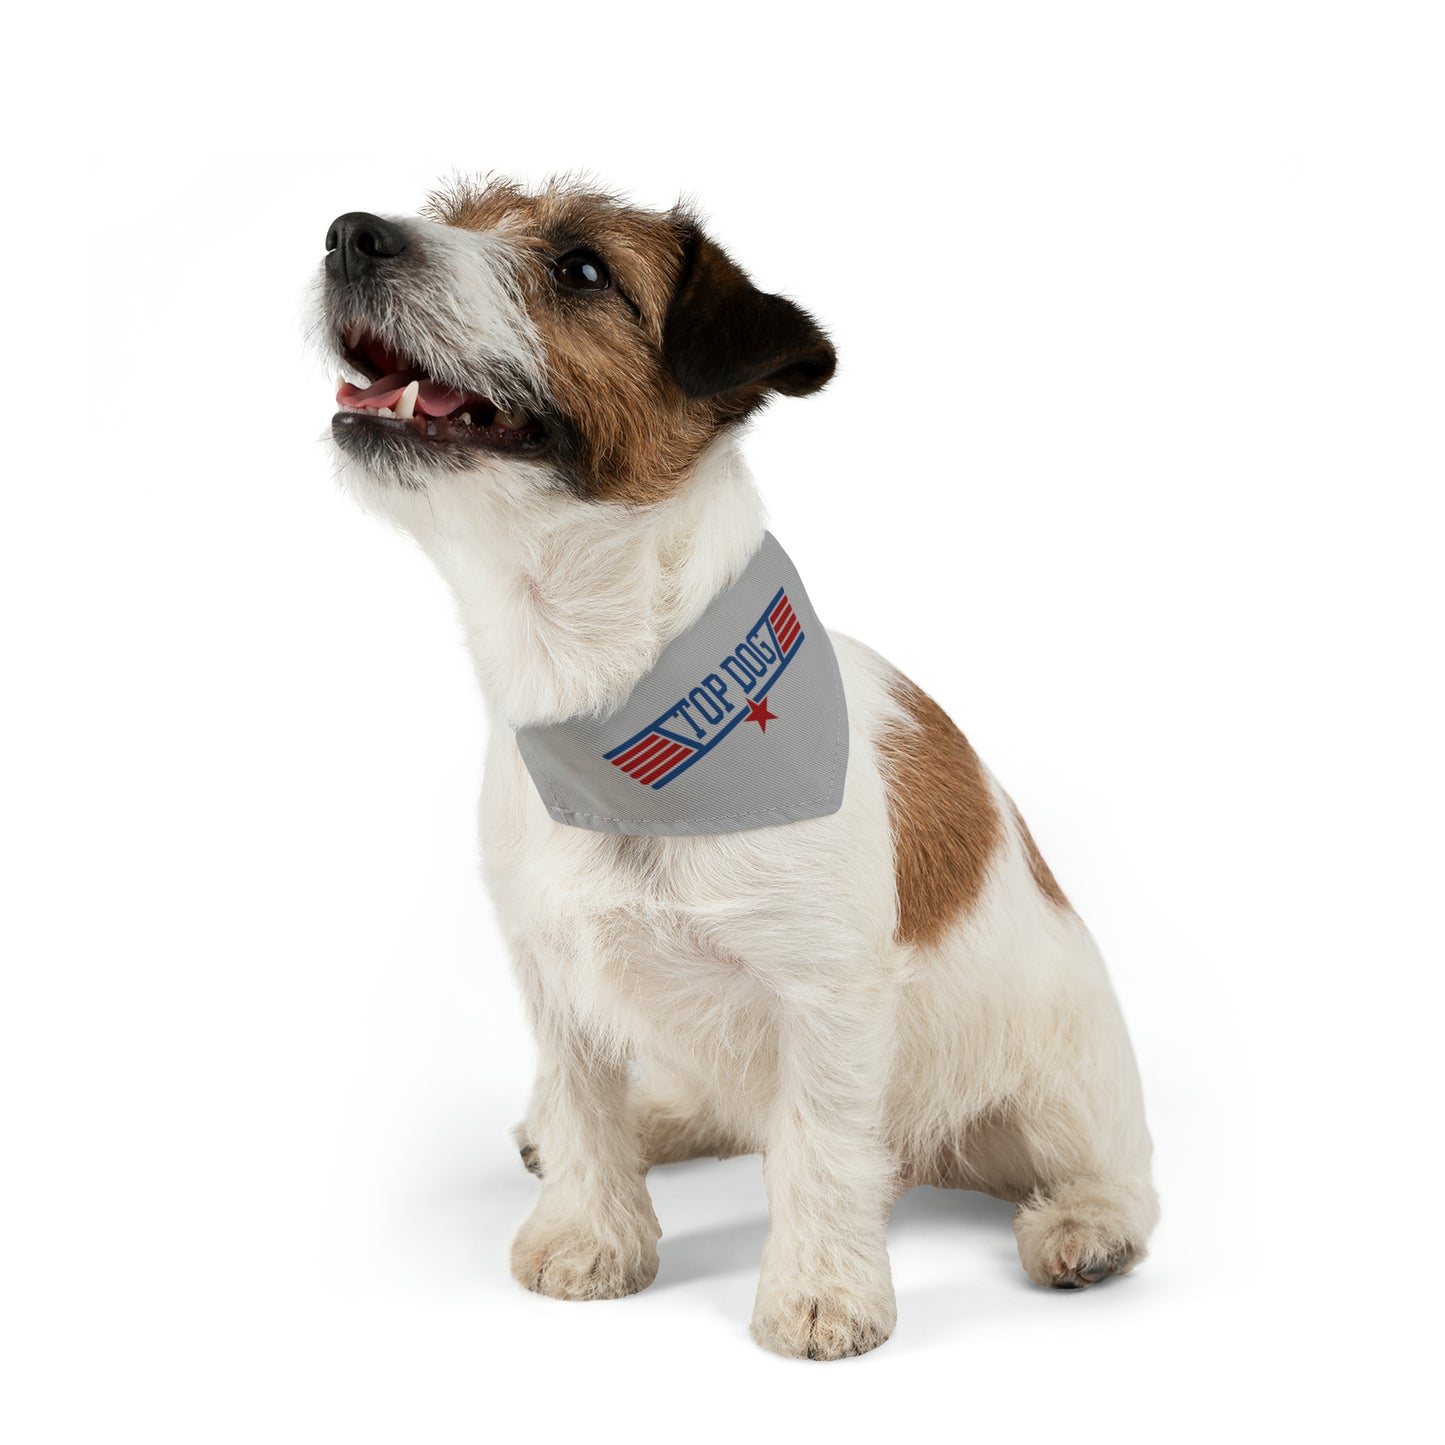 aviation merchandise, dog wearing "top dog" bandana collar in grey